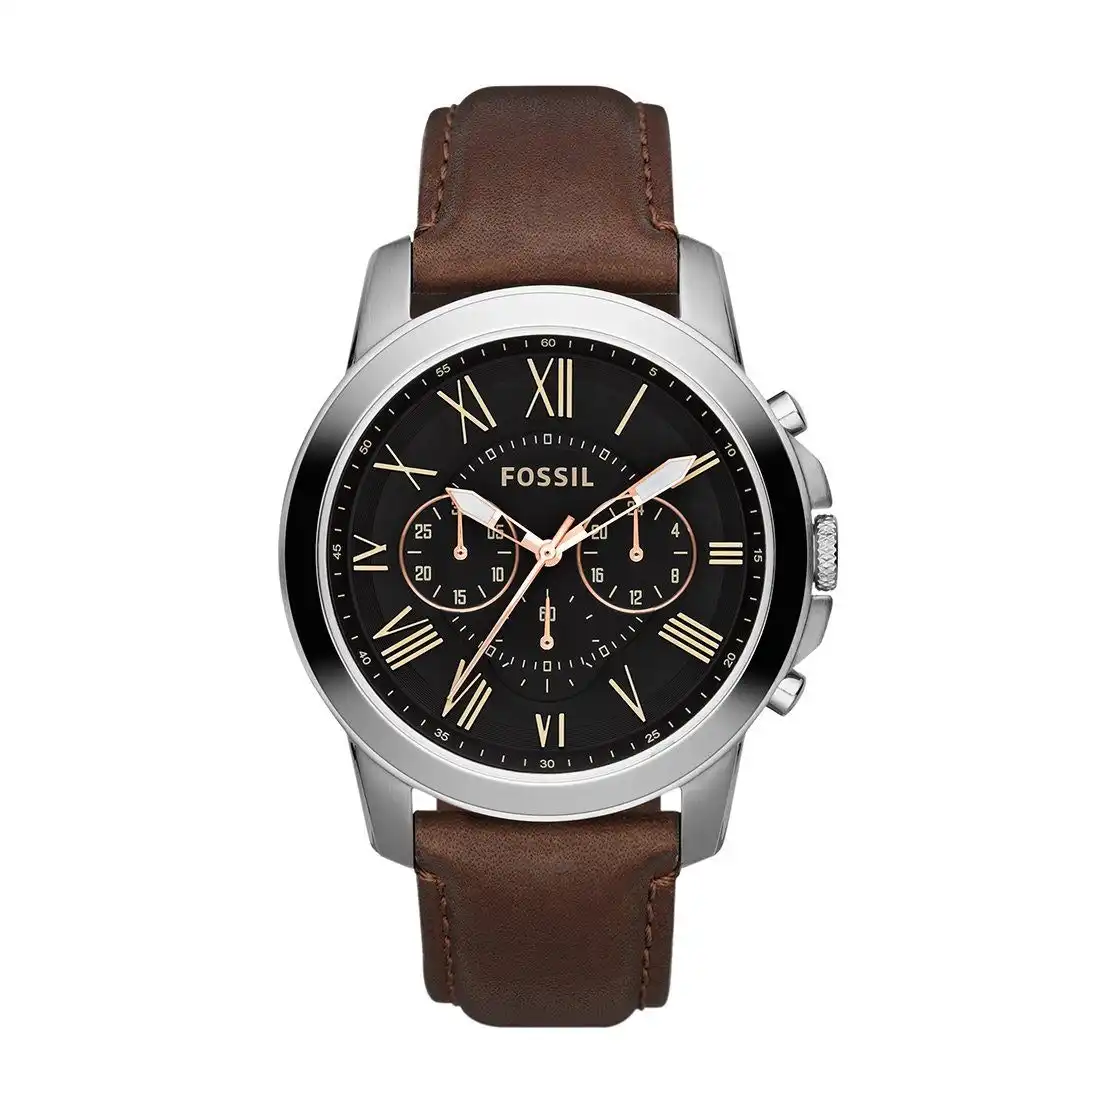 Fossil Men's Leather Watch Model - FS4813